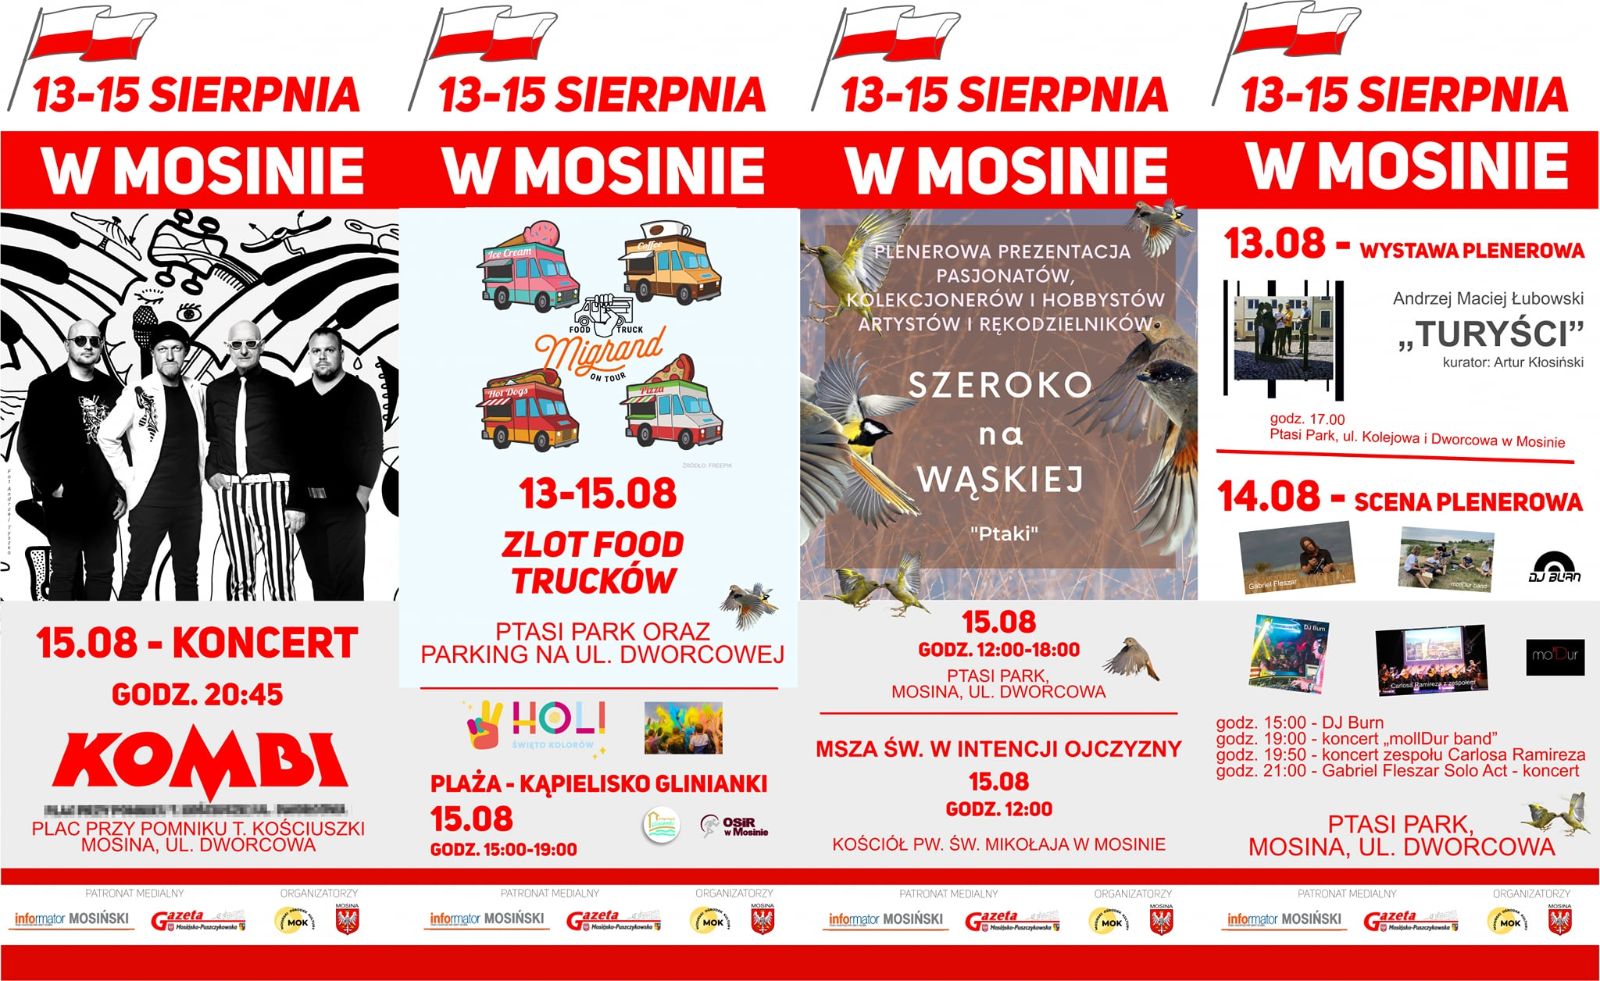 13-15 sieprnia w Mosinie, plakat informacyjny